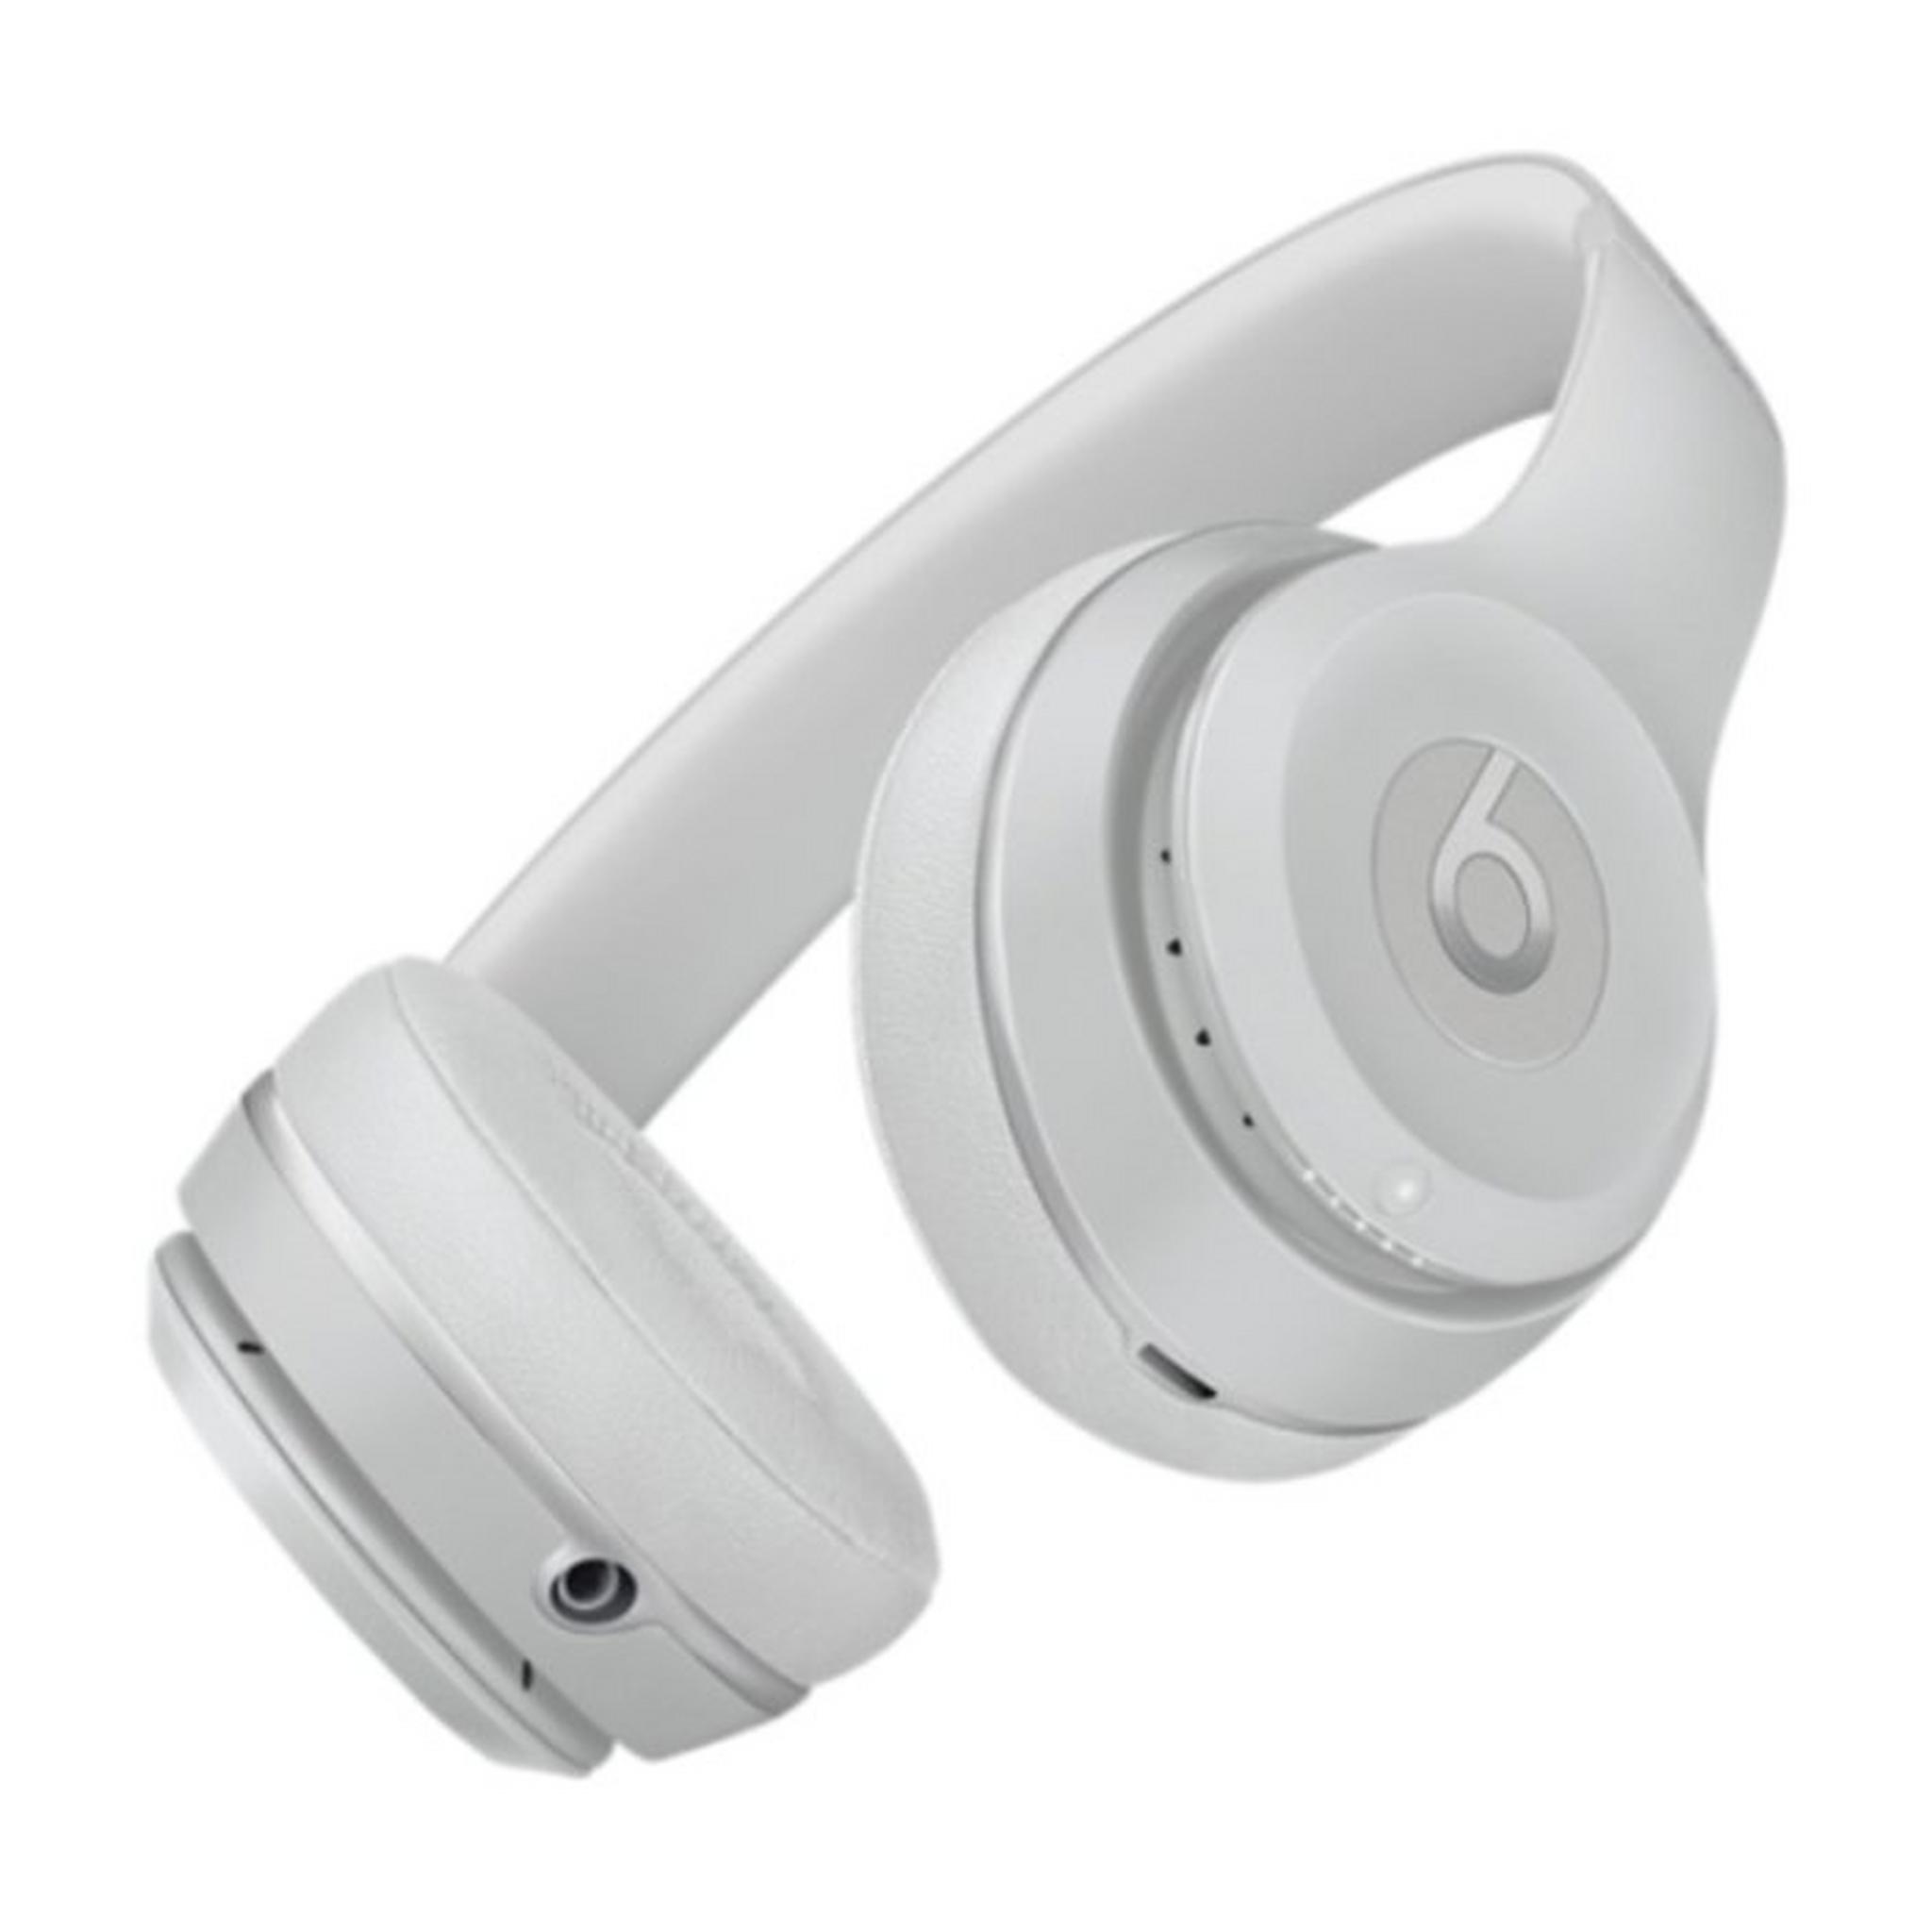 Beats Solo 3 Wireless Headphones - Matte Silver